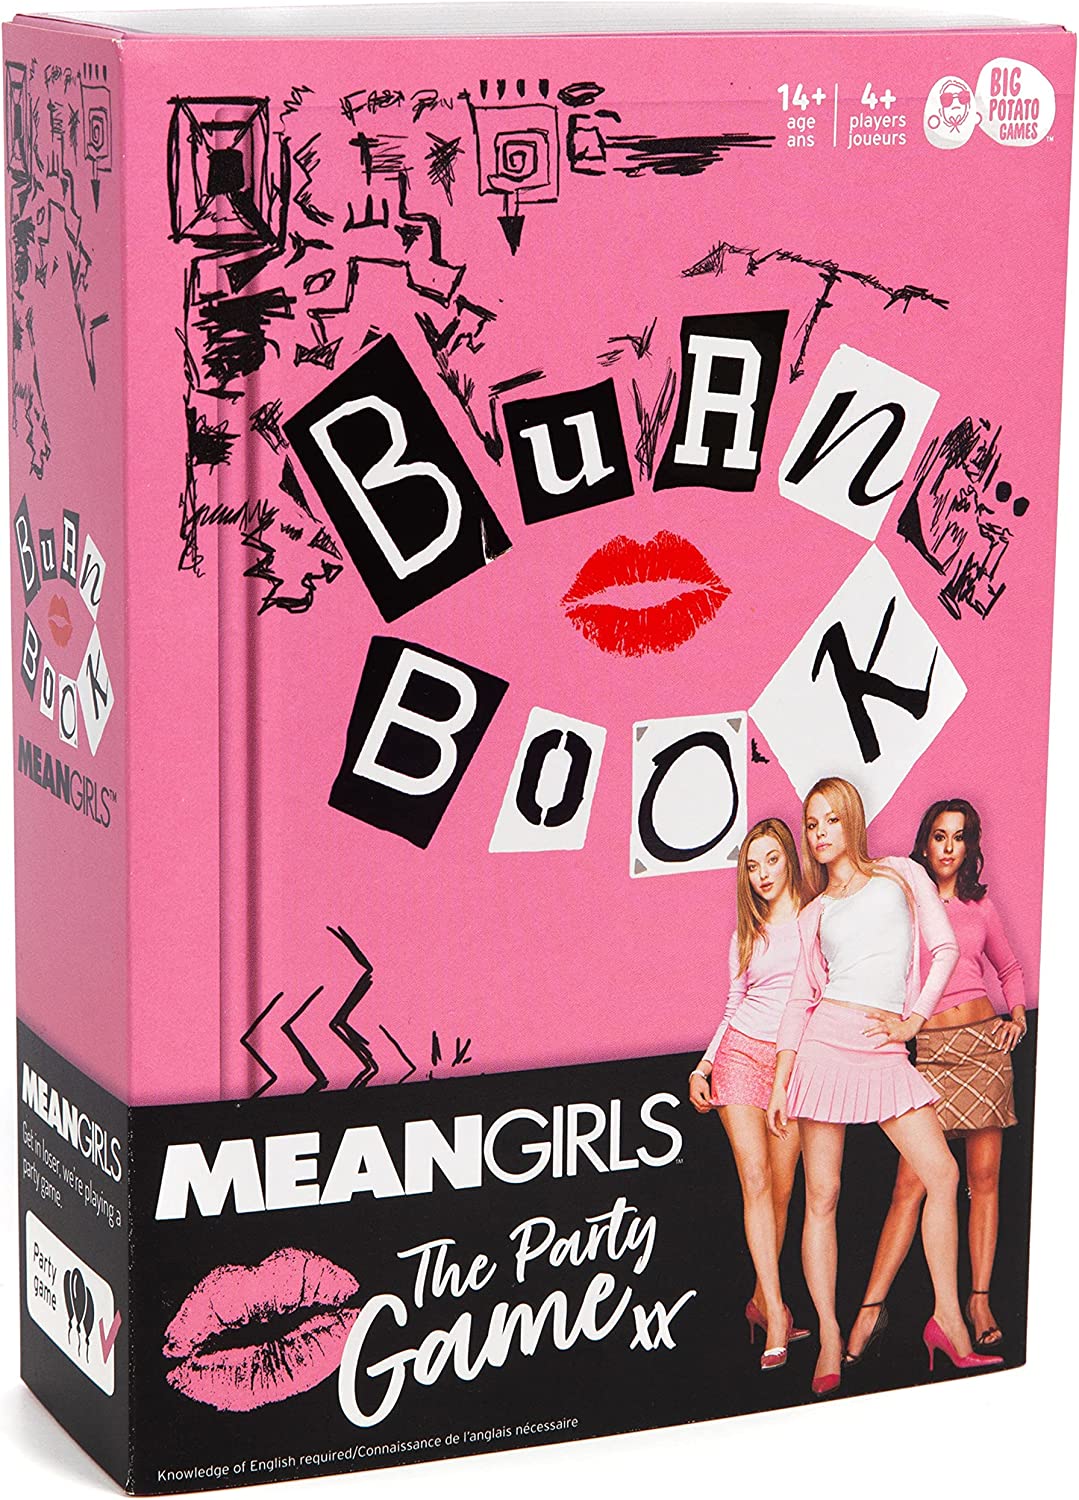 mean girls burn book fight scene